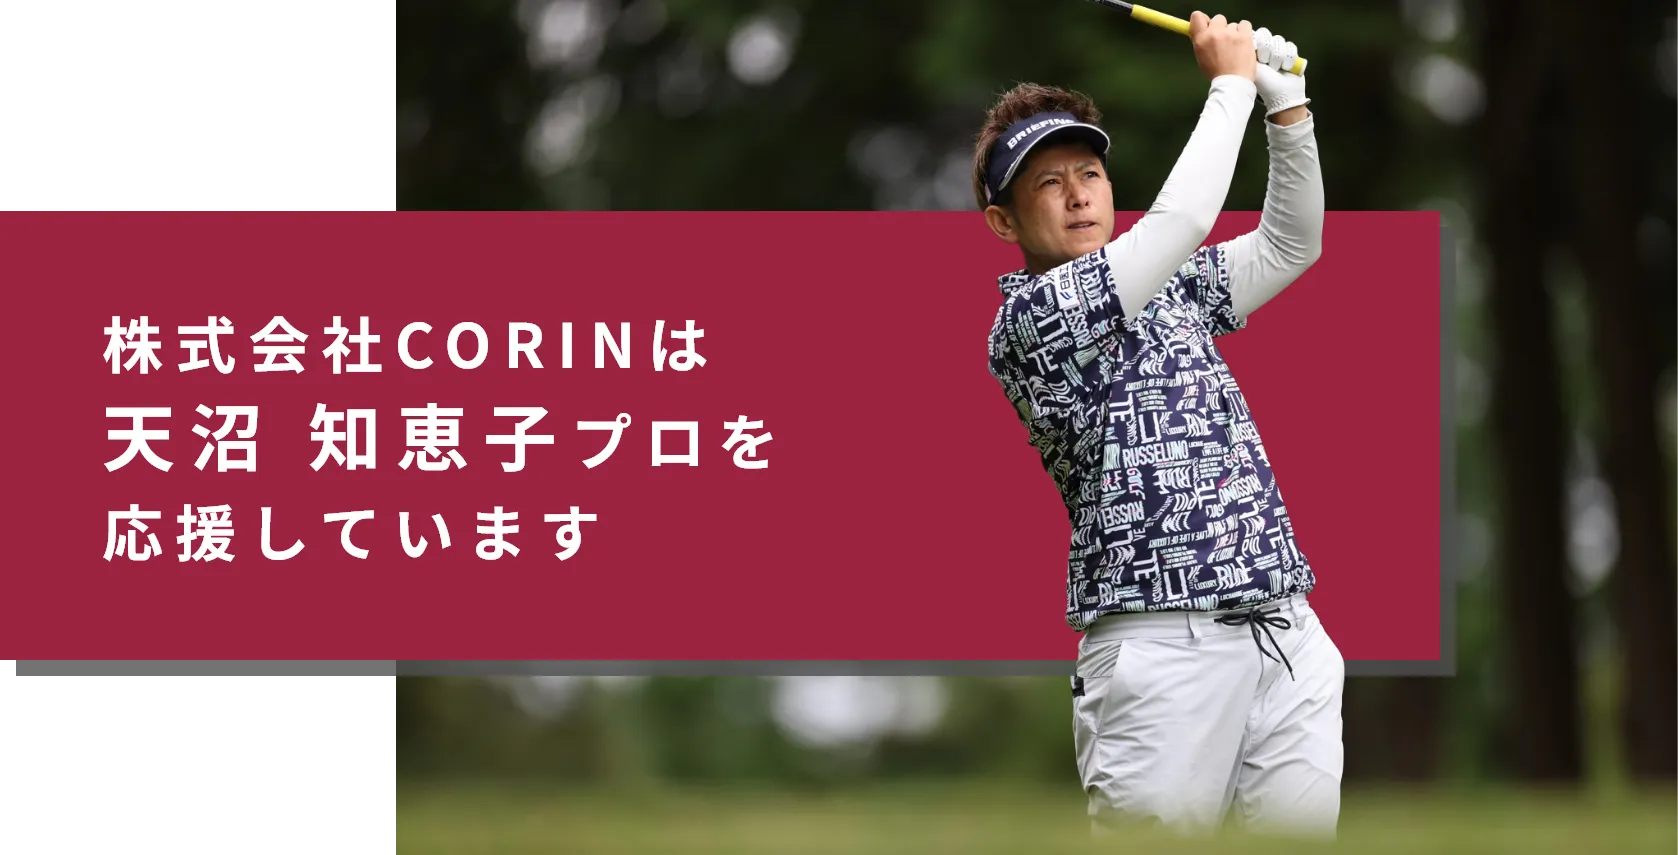 株式会社CORINは天沼知恵子プロを応援しています